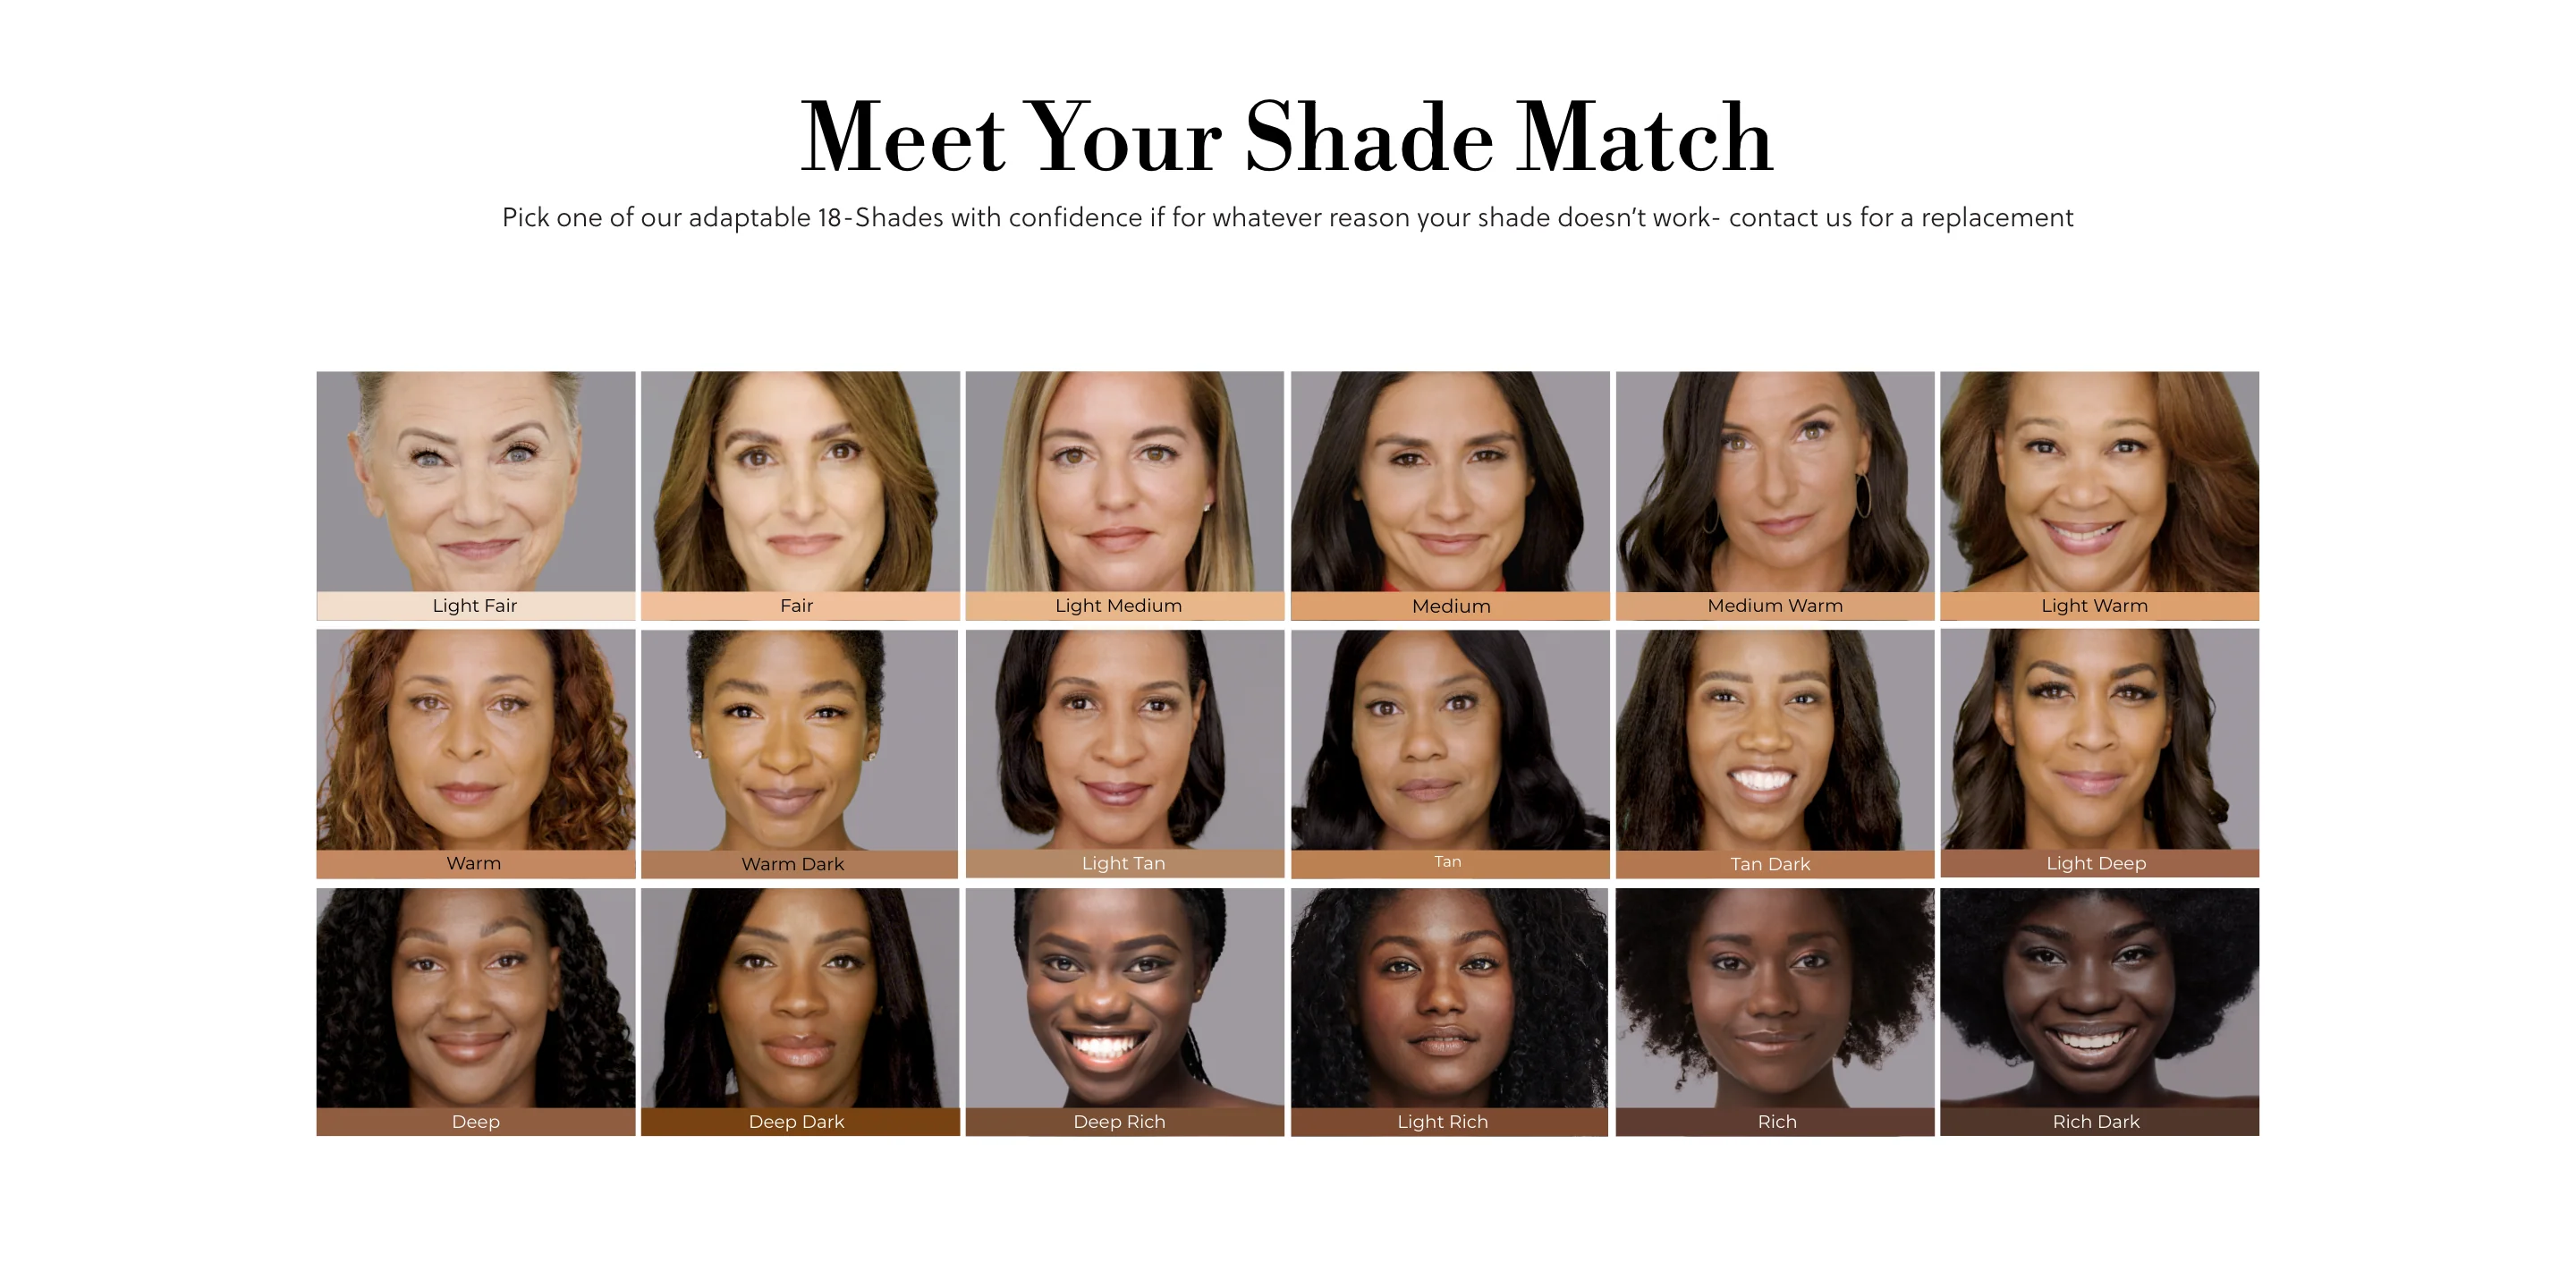 Meet Your Shade Match